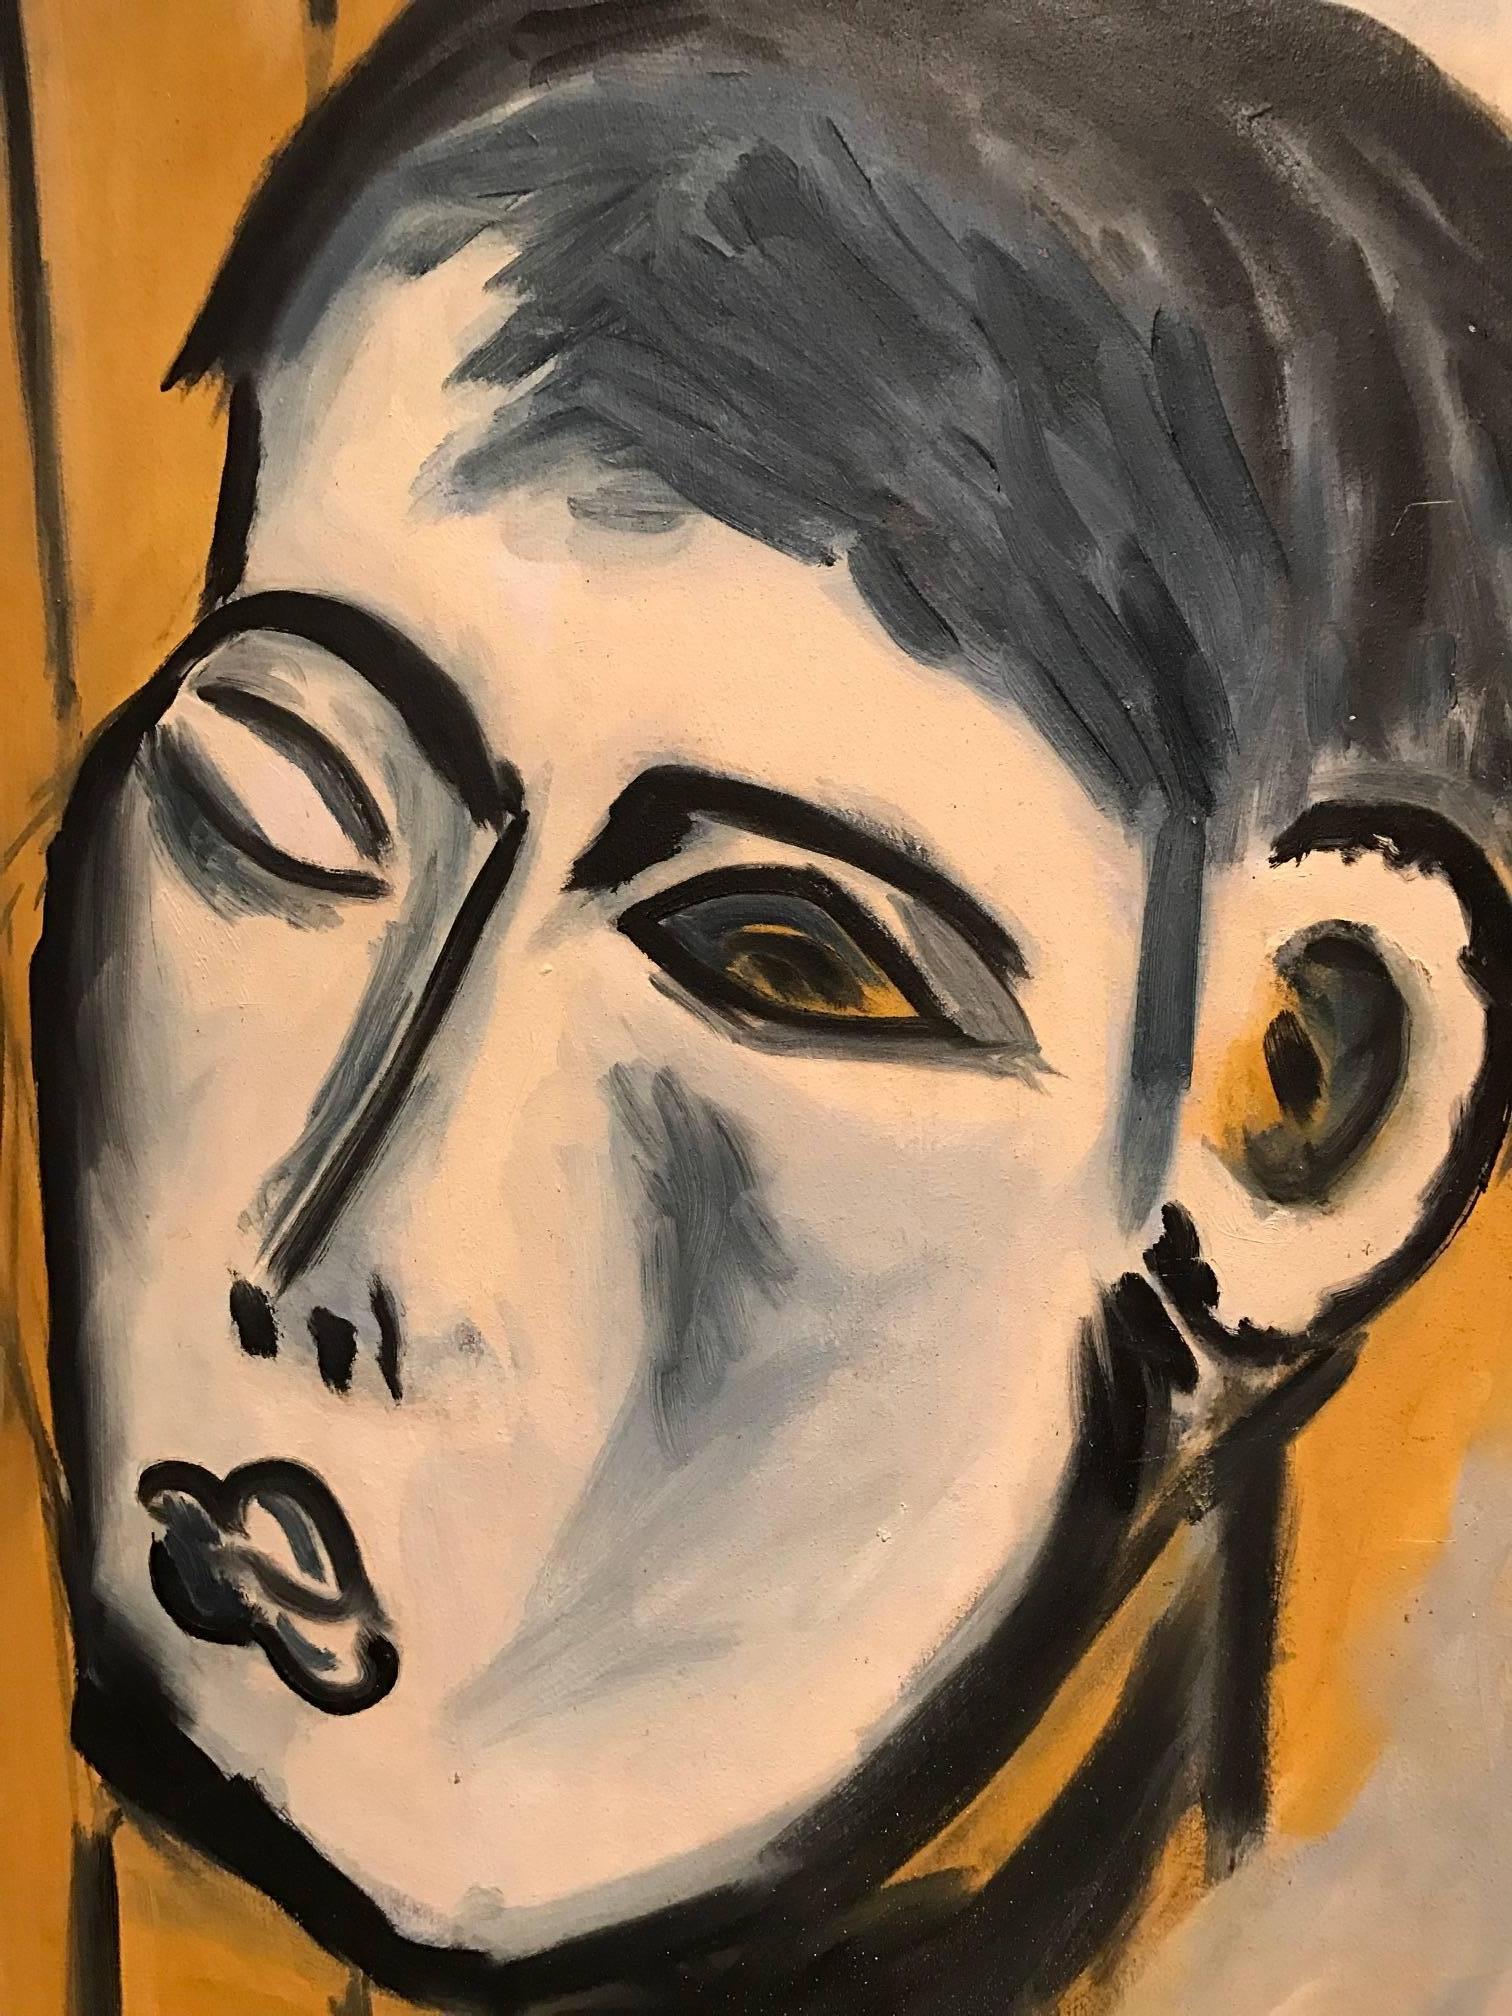 Superbe peinture à l'huile originale des années 1960 représentant ce portrait de tête d'un homme abstrait. Image unique avec un coup de pinceau dramatique et vif. 

Le tableau est signé par l'artiste britannique du XXe siècle, Peter Howard, en bas à